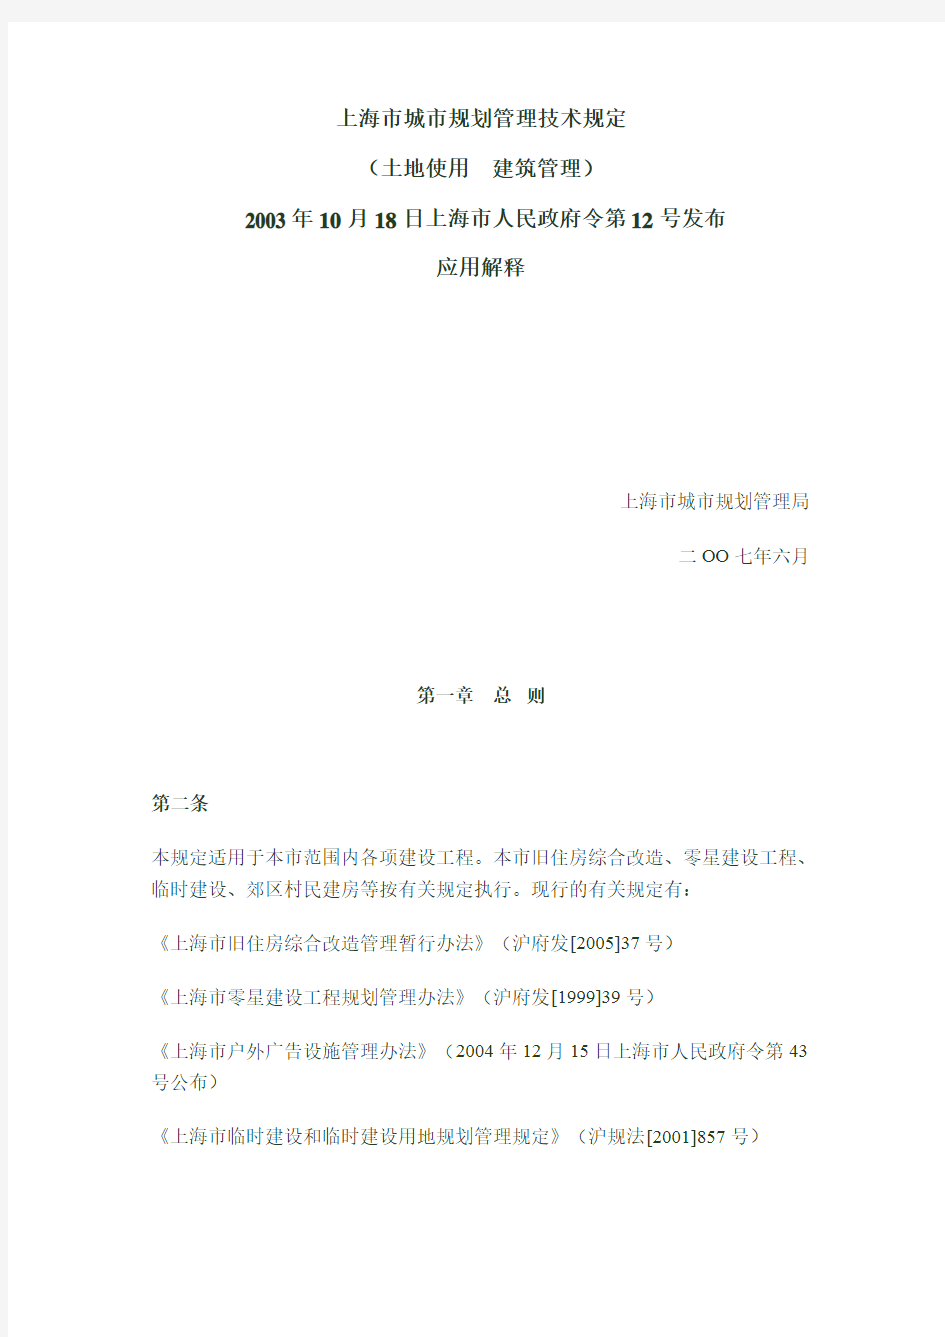 沪规法2007-524, 上海市城市规划管理技术规定(土地使用  建筑管理)应用解释